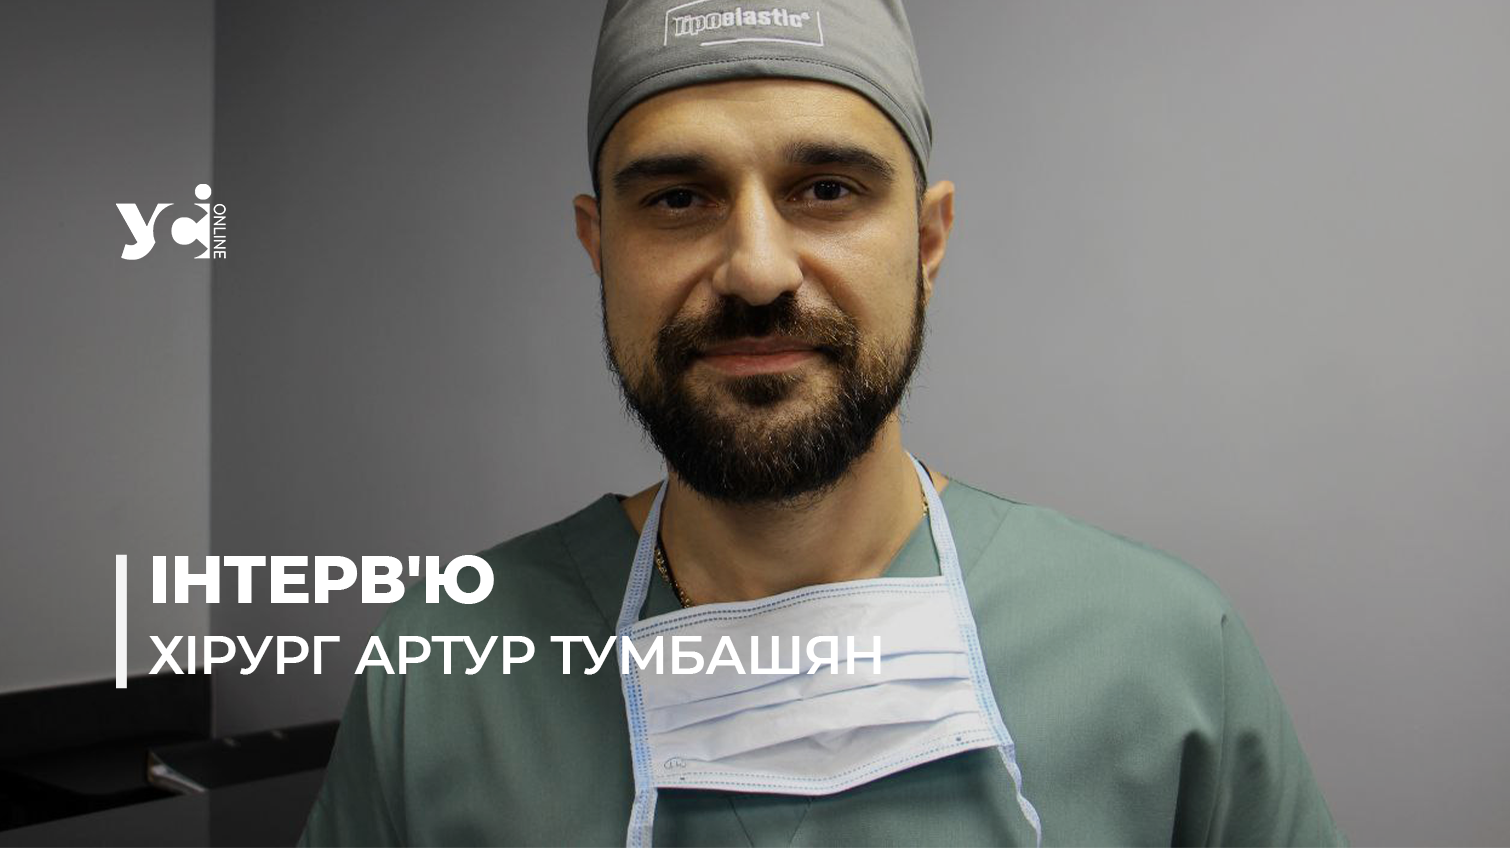 Ми на своєму фронті: в Одесі пластичні хірурги повертають обличчя жертвам війни «фото»